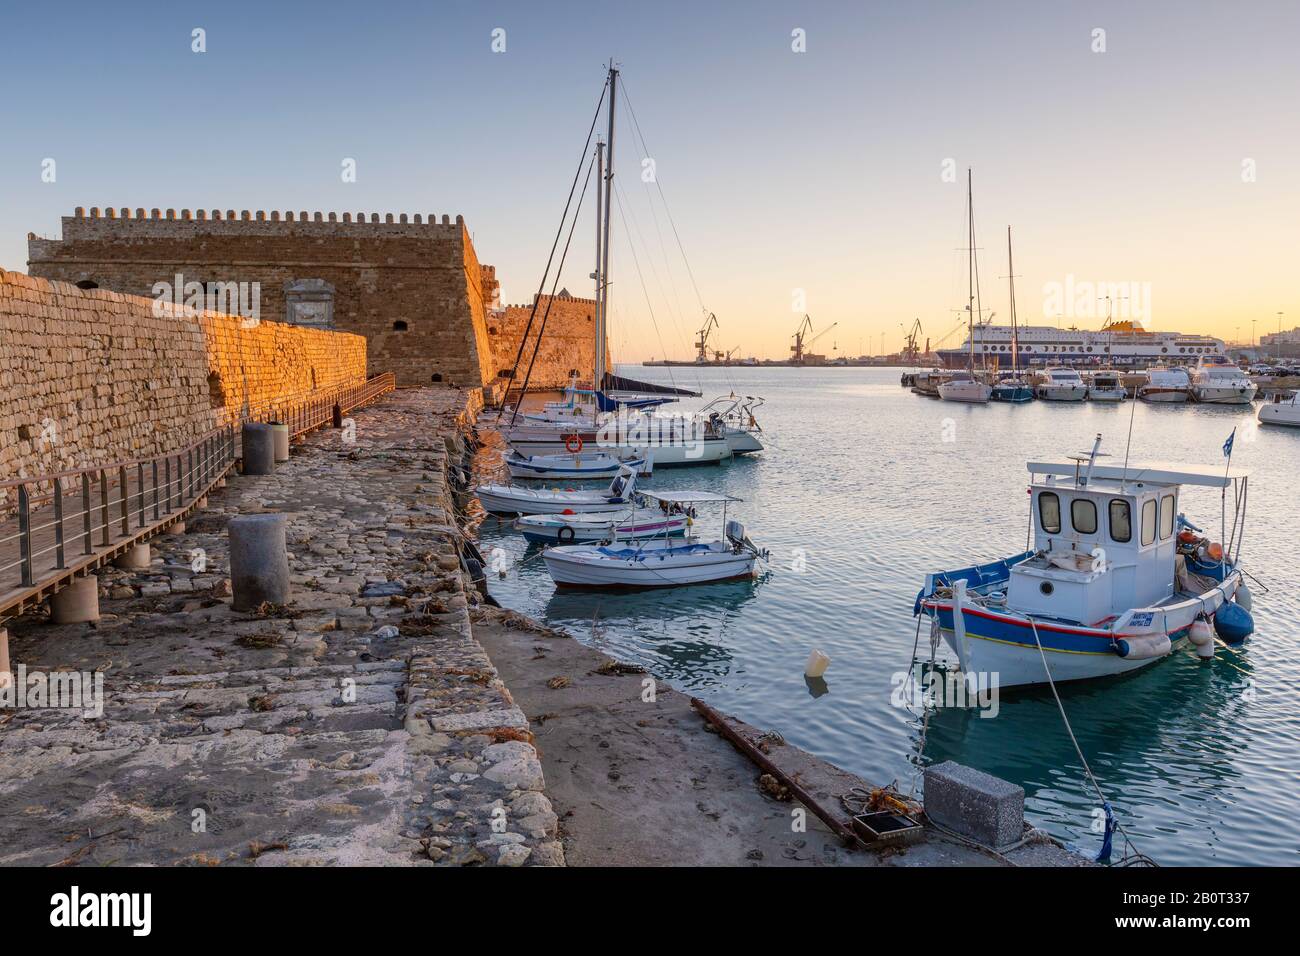 Heraklion, Grecia - 11 gennaio 2020: Fortezza veneziana nel vecchio porto di Heraklion a Creta, Grecia. Foto Stock